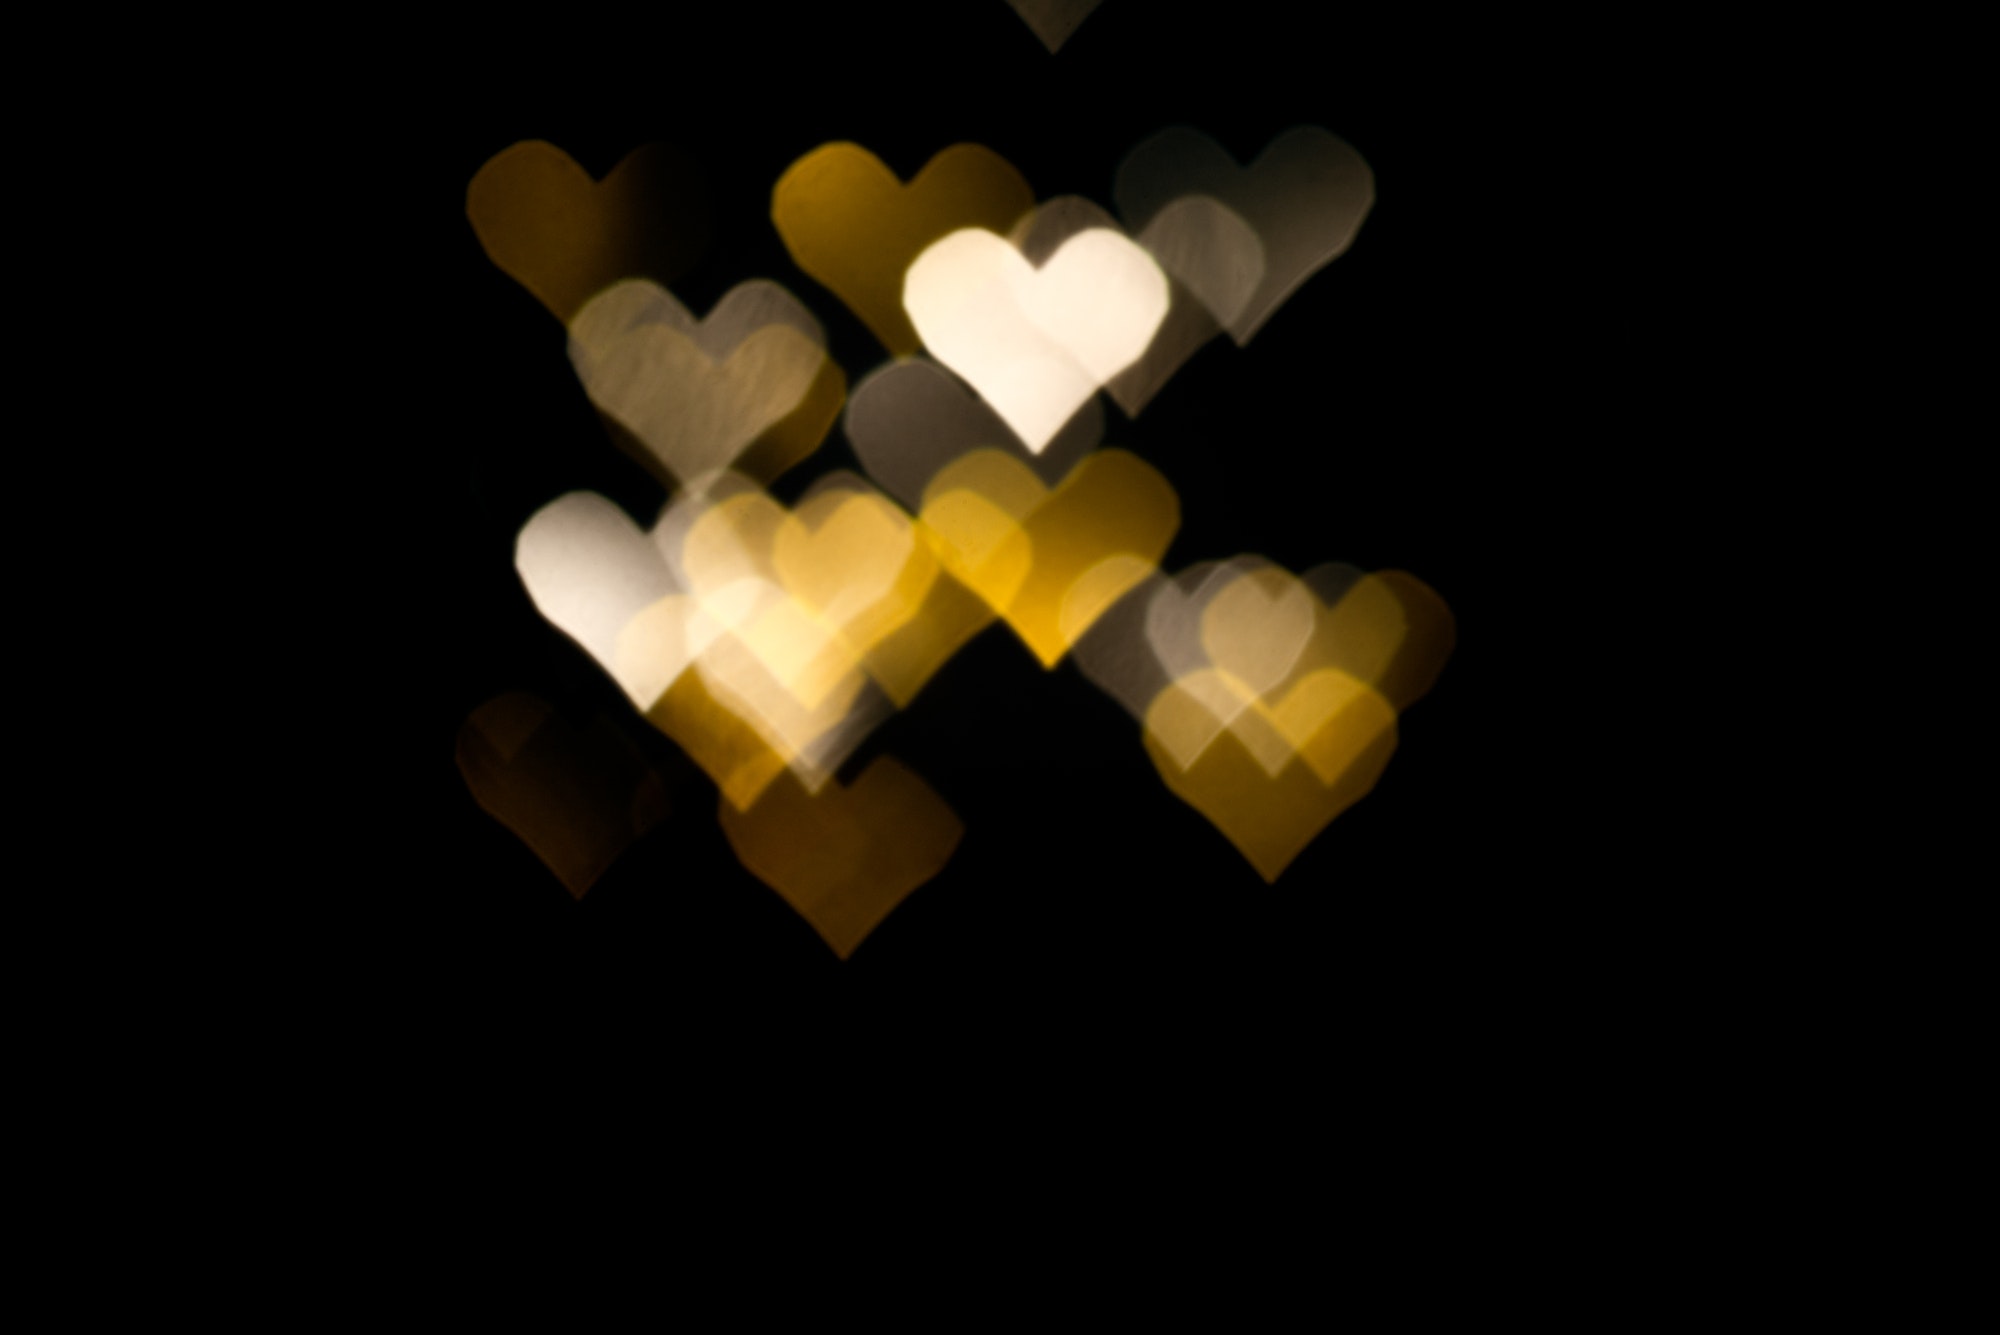 Abstract light, bokeh pattern in heart shape